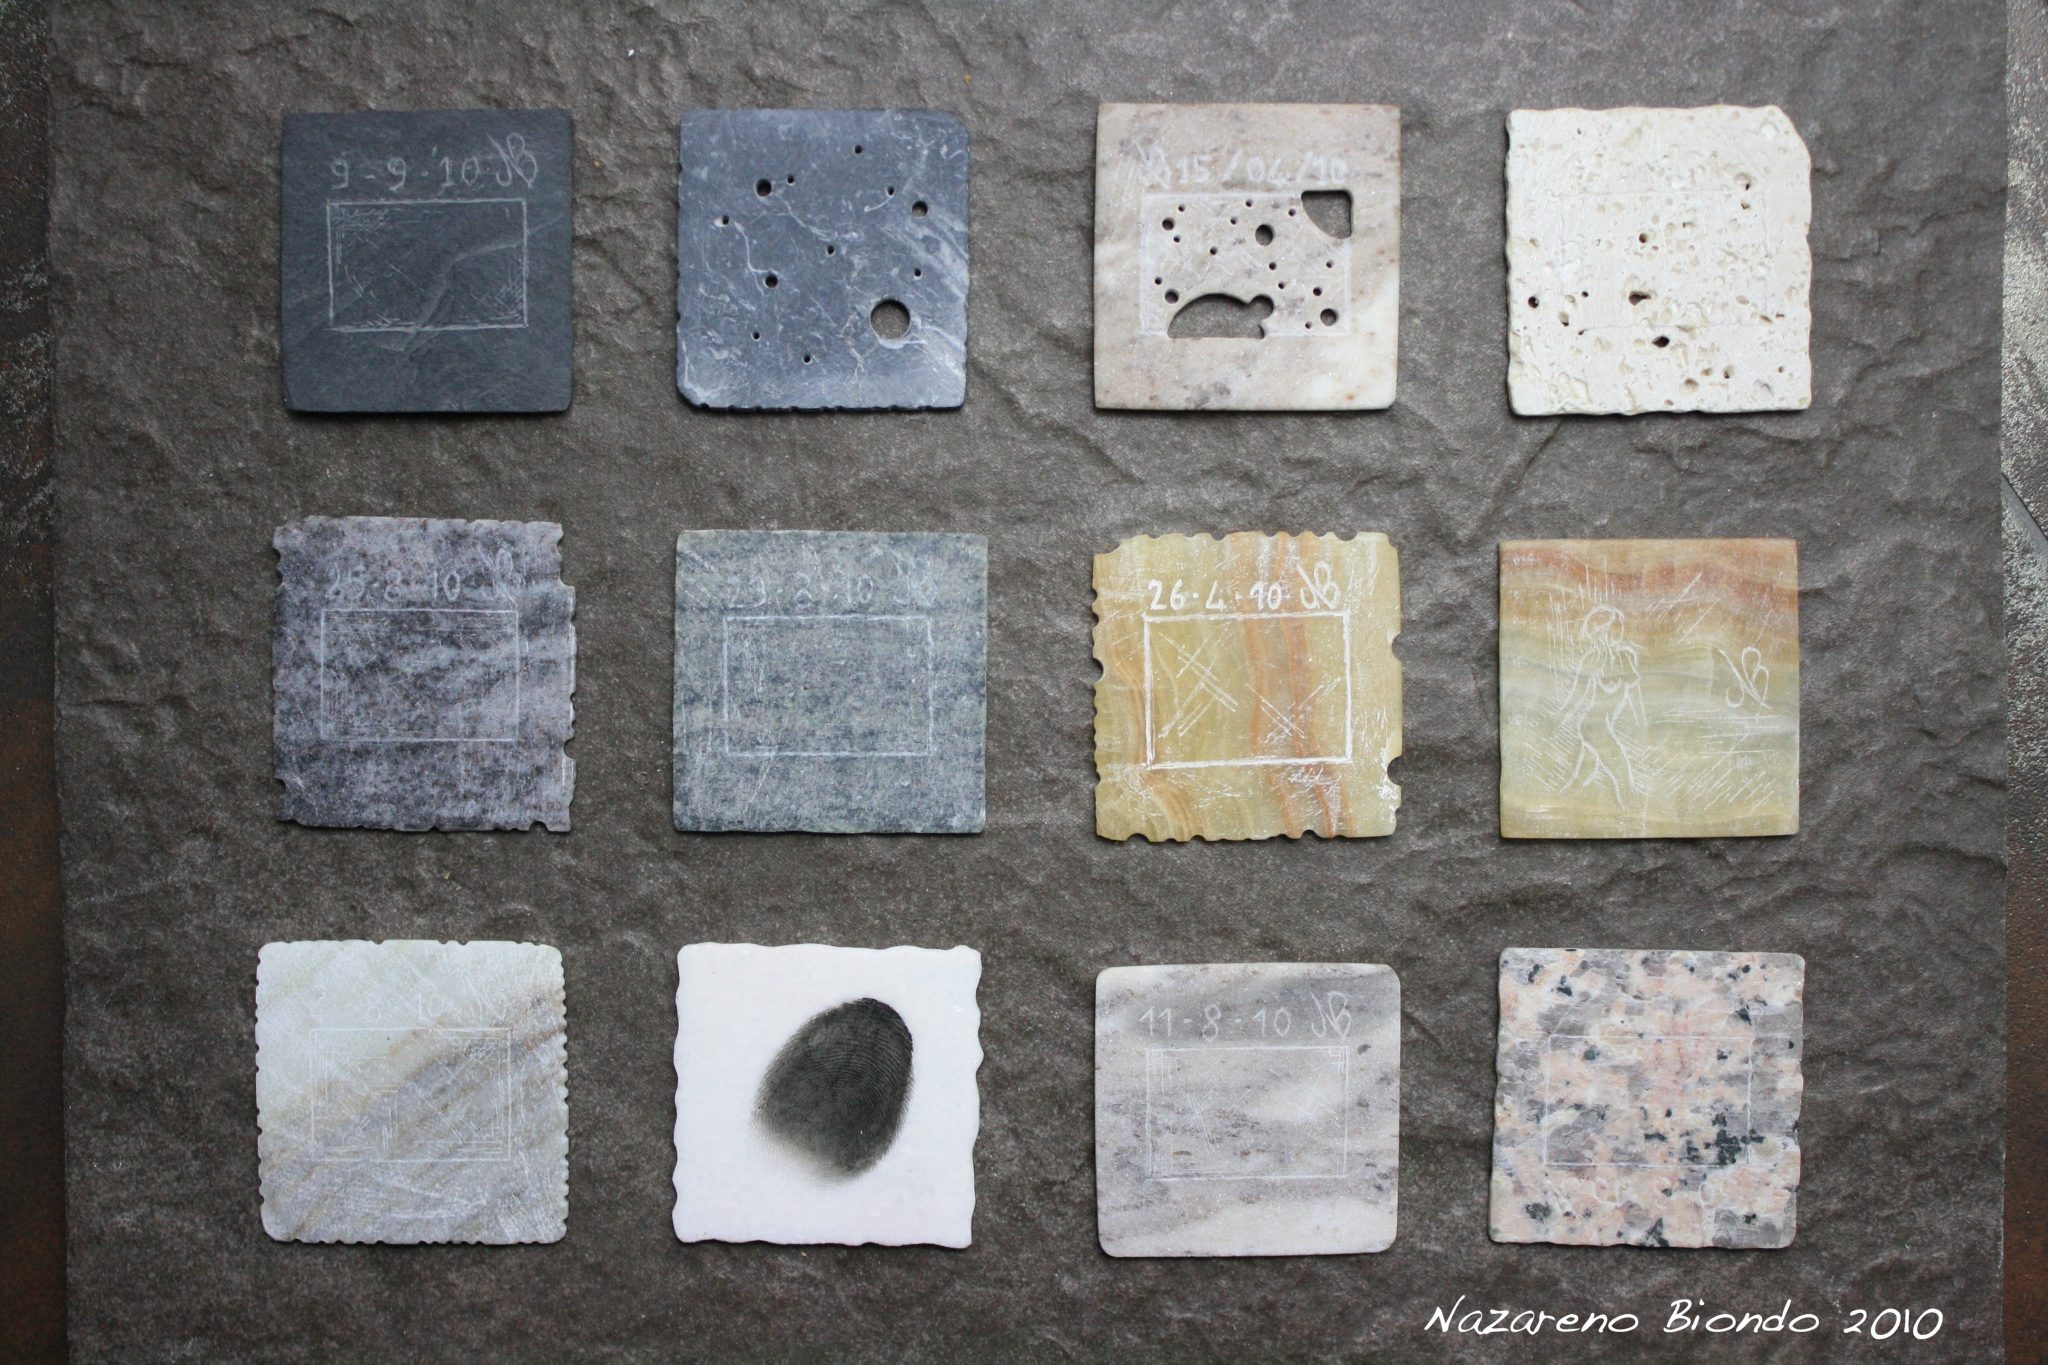 Nazareno Biondo, diapositive proiettabili riprodotte in vari tipi di marmo. light through the stone. 2010. 5x5x0,2 cm